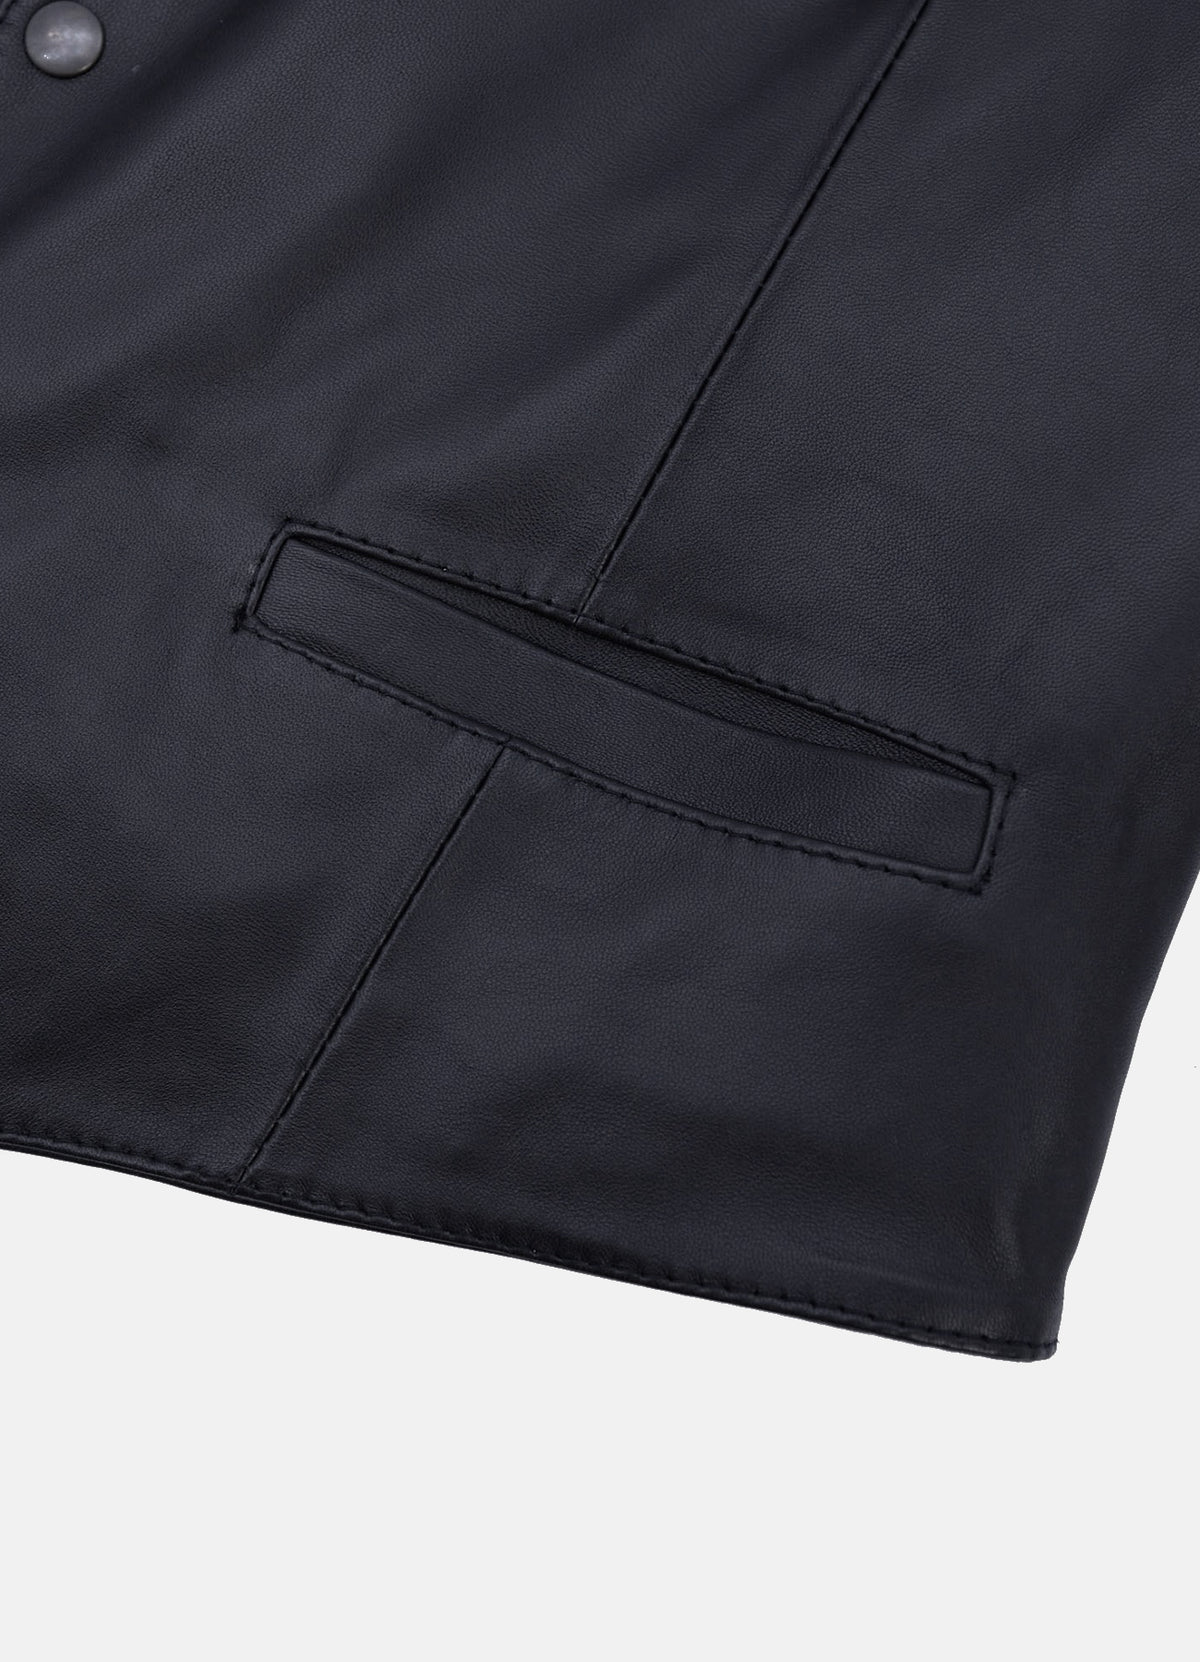 Mens Black Real Leather Vest | Elite Jacket